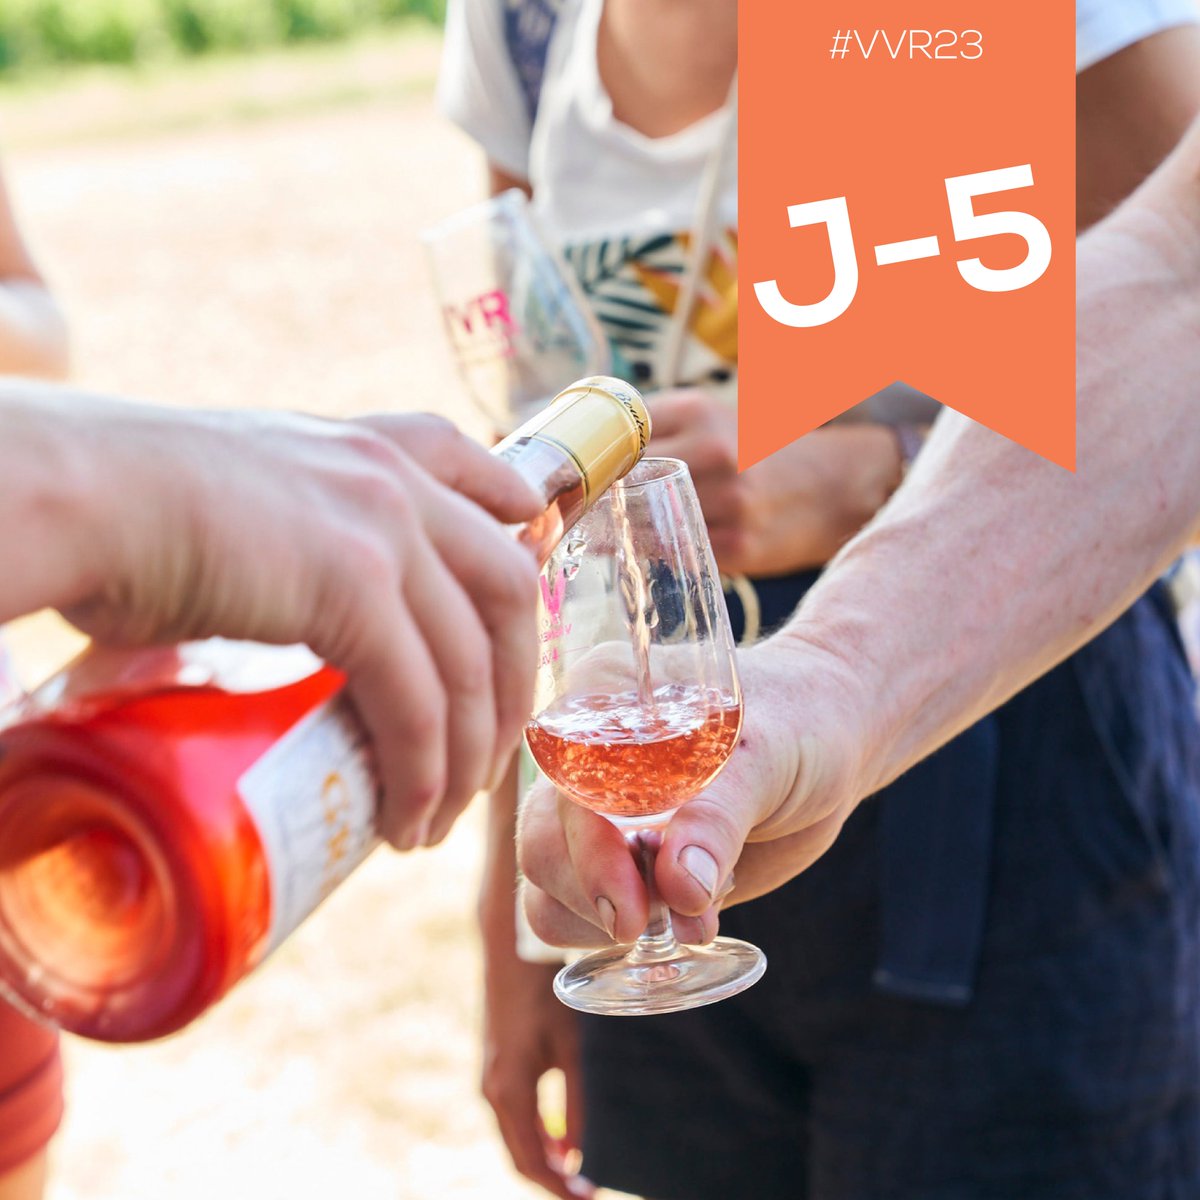 • J-5 • Tout au long de votre randonnée vous découvrirez des @vinsdeloire soigneusement sélectionnés pour cette 20e édition ! 🍷 Sachez que les cuvées dégustées seront en vente auprès des vignerons, sur chaque village #VVR. Profitez-en ! 🤩 #vvrvaldeloire #randonnée